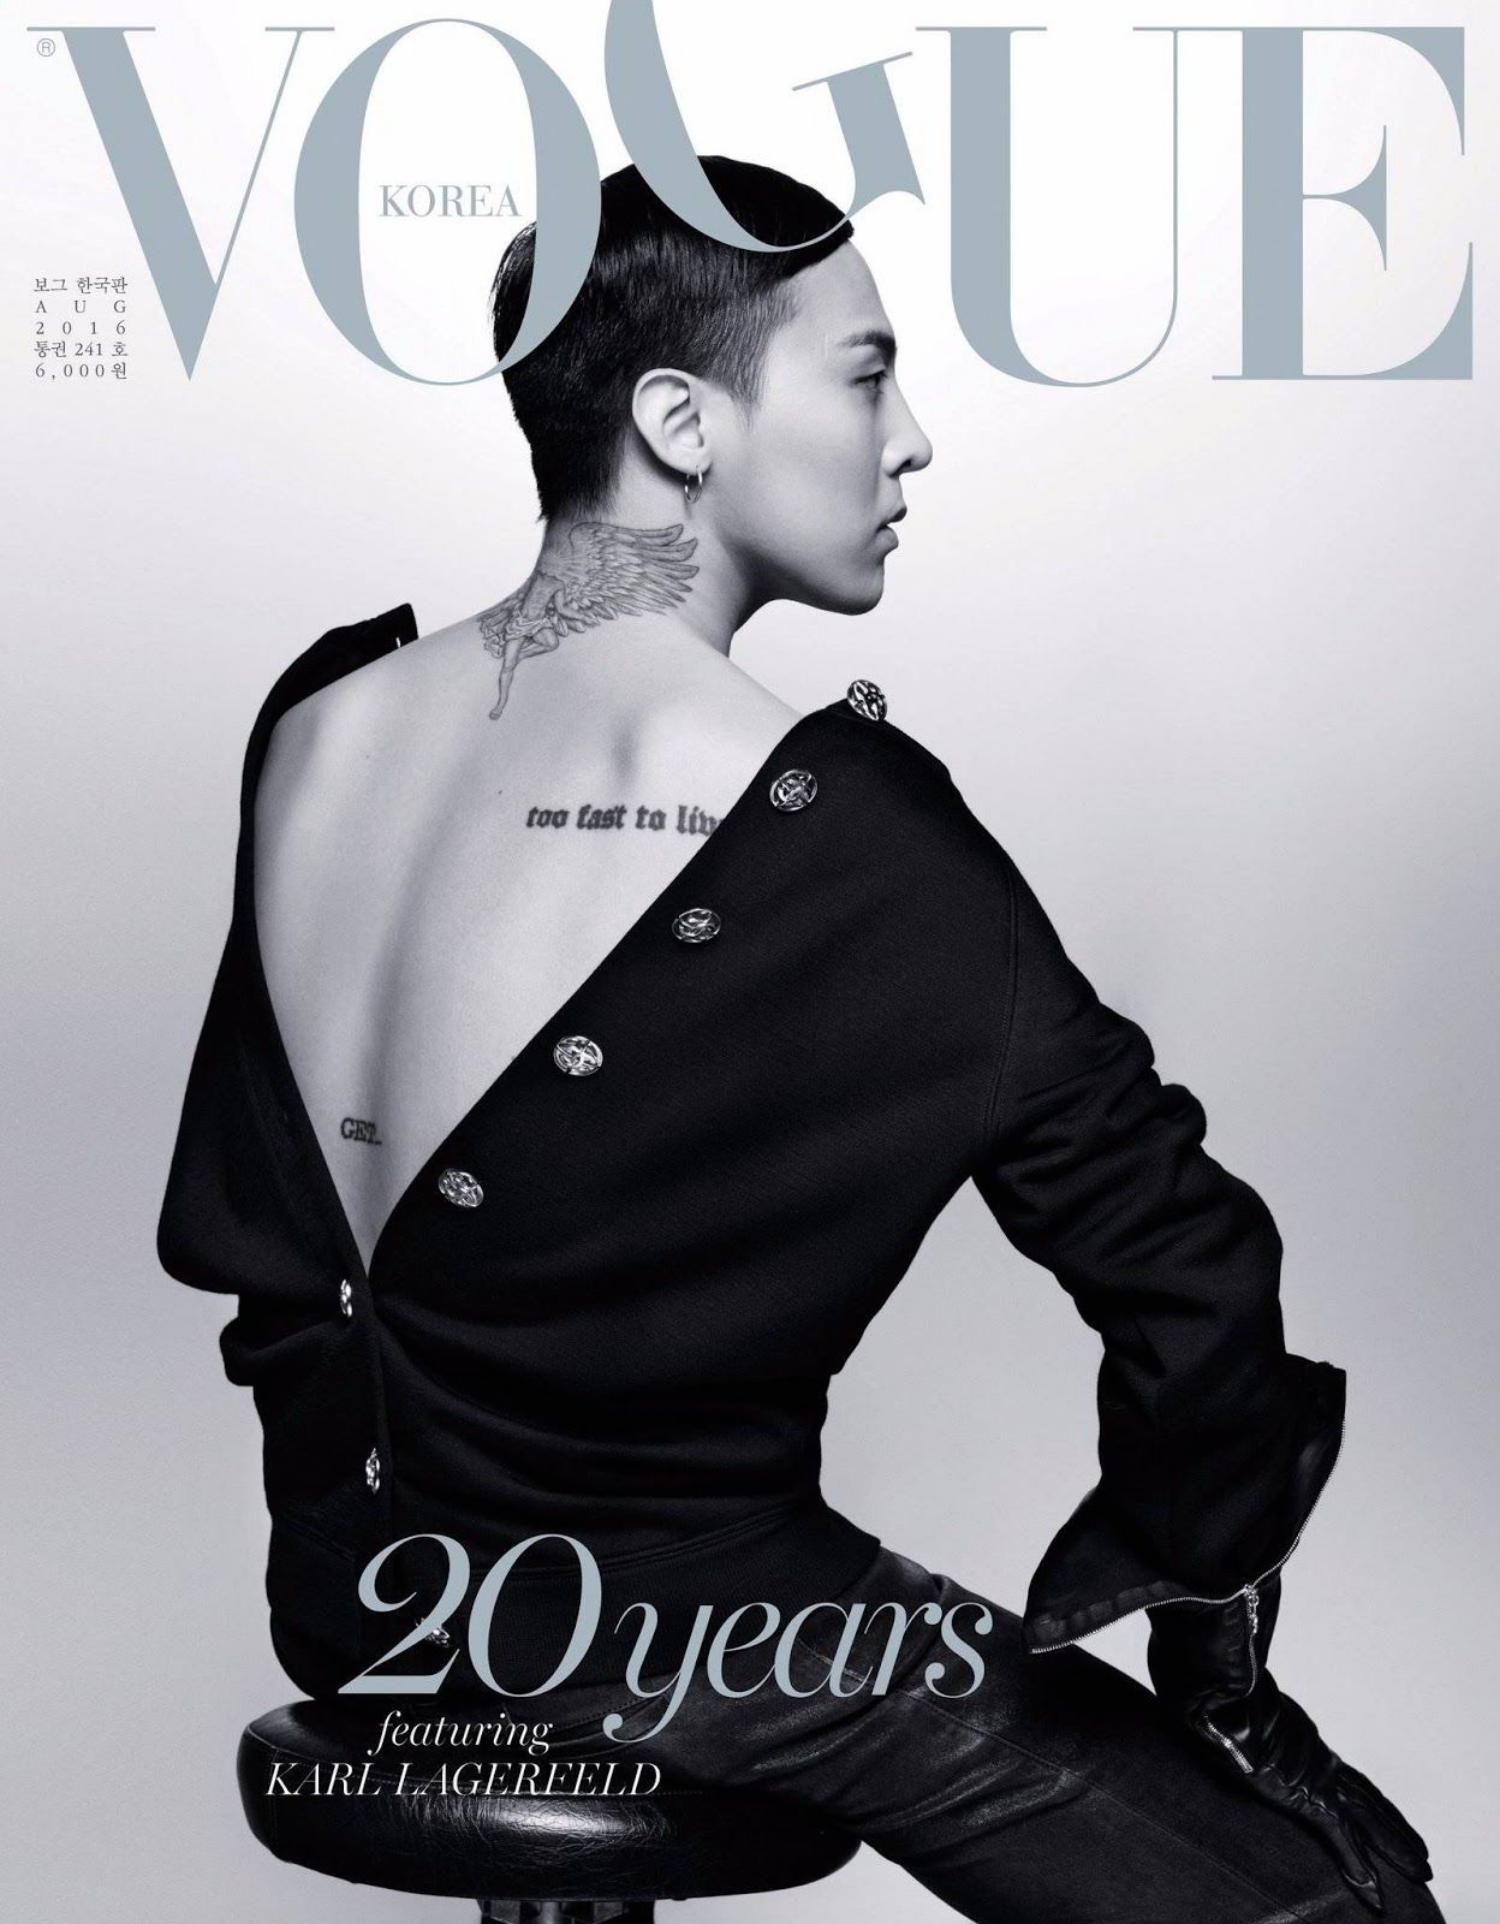 Vogue chủ yếu cung cấp thông tin về thời gian và tin tức giới thượng lưu.